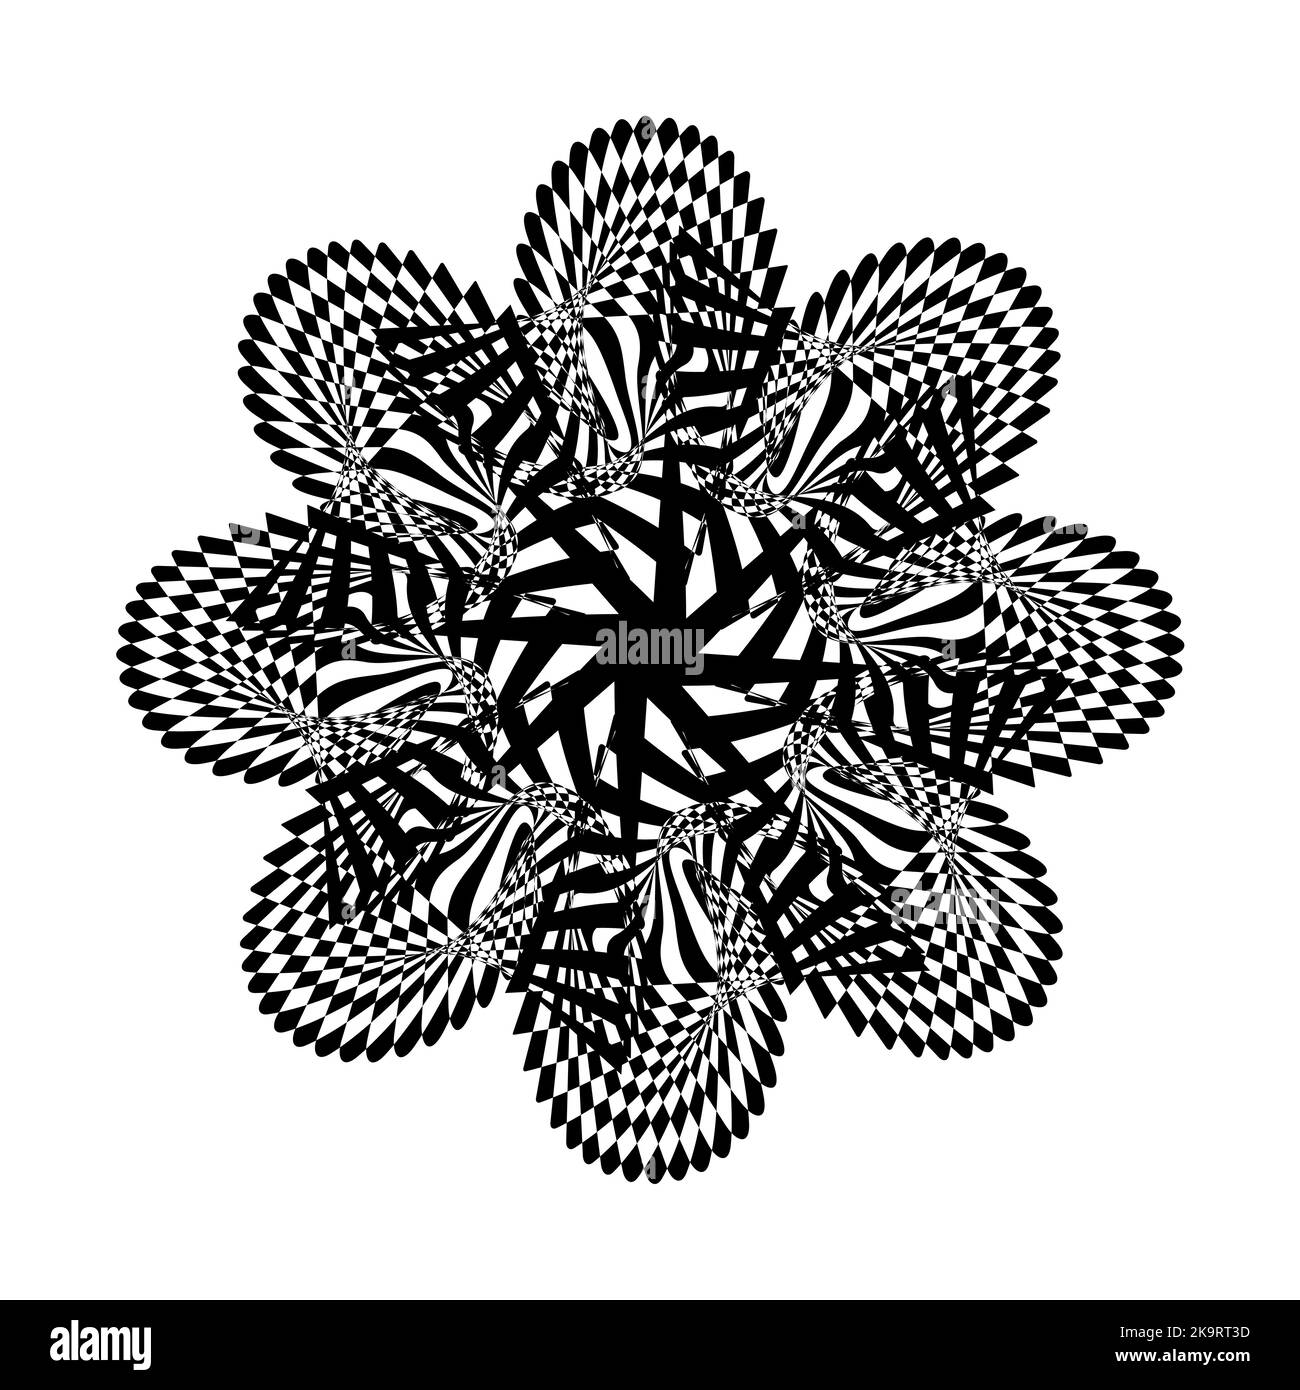 Abstrakt verdrehte schwarz-weiße Blumenfigur. Optische Täuschung der verzerrten Oberfläche. Verdrehte Streifen. Stilisierte figur aus dem jahr 3D. Vektorgrafik. Toll Stock Vektor